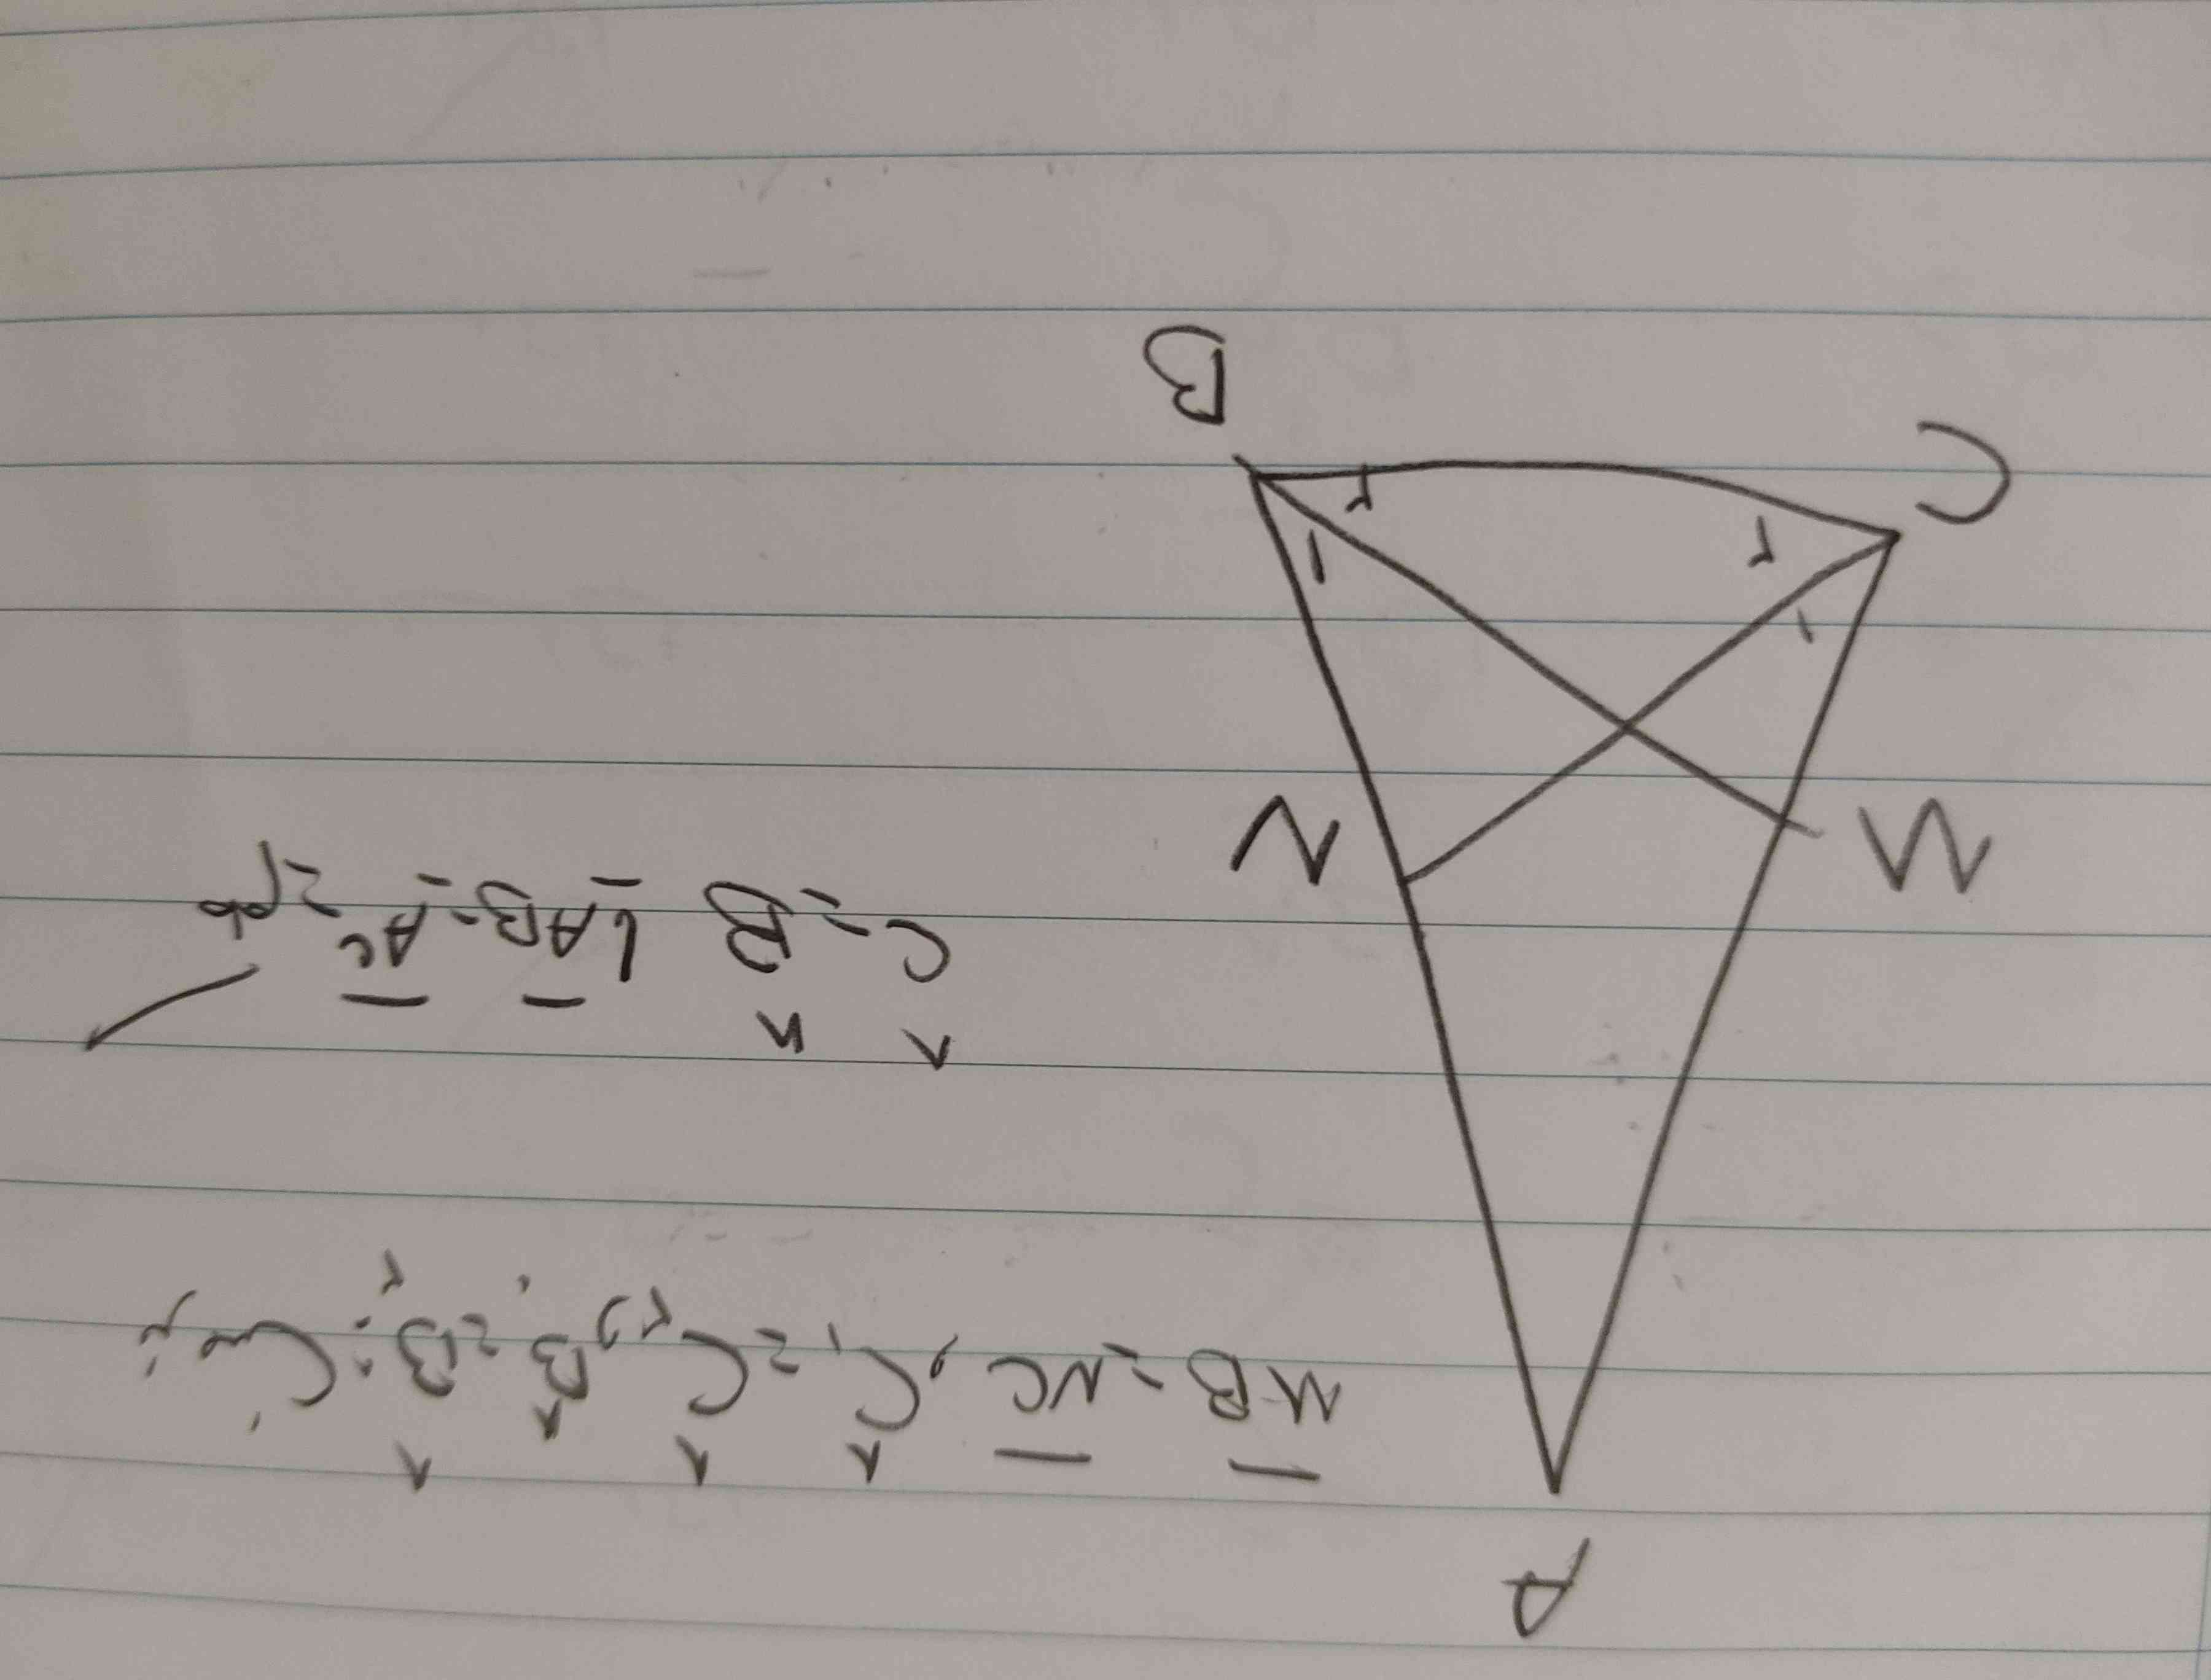 در مثلثی نیم ساز های دو زاویه مجاور برابر است.ثابت کنید مثلث متساوی الساقین است